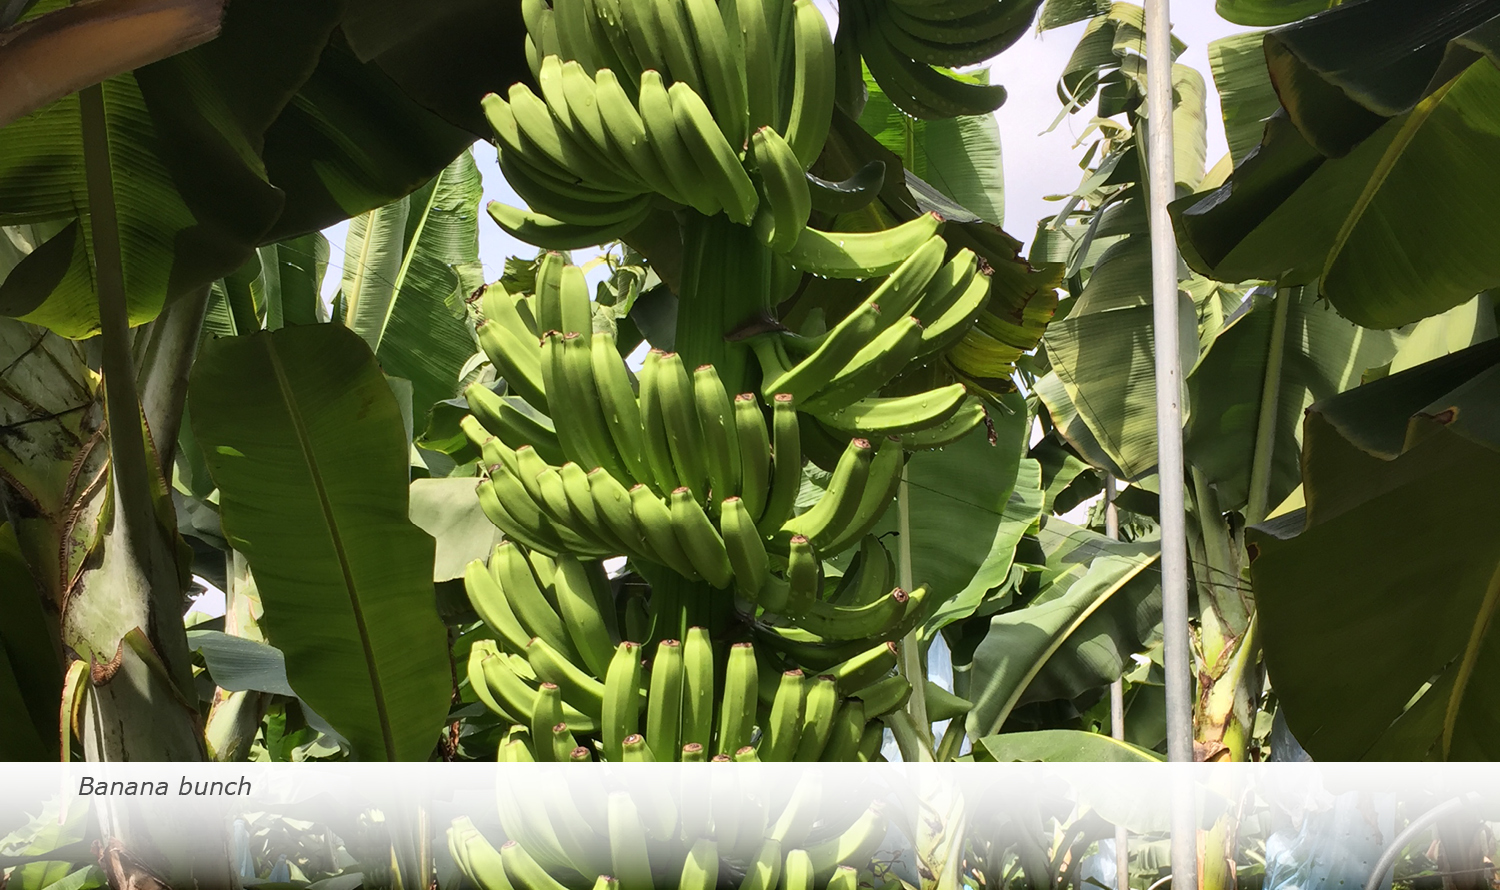 Info & Facts: Banana bunch